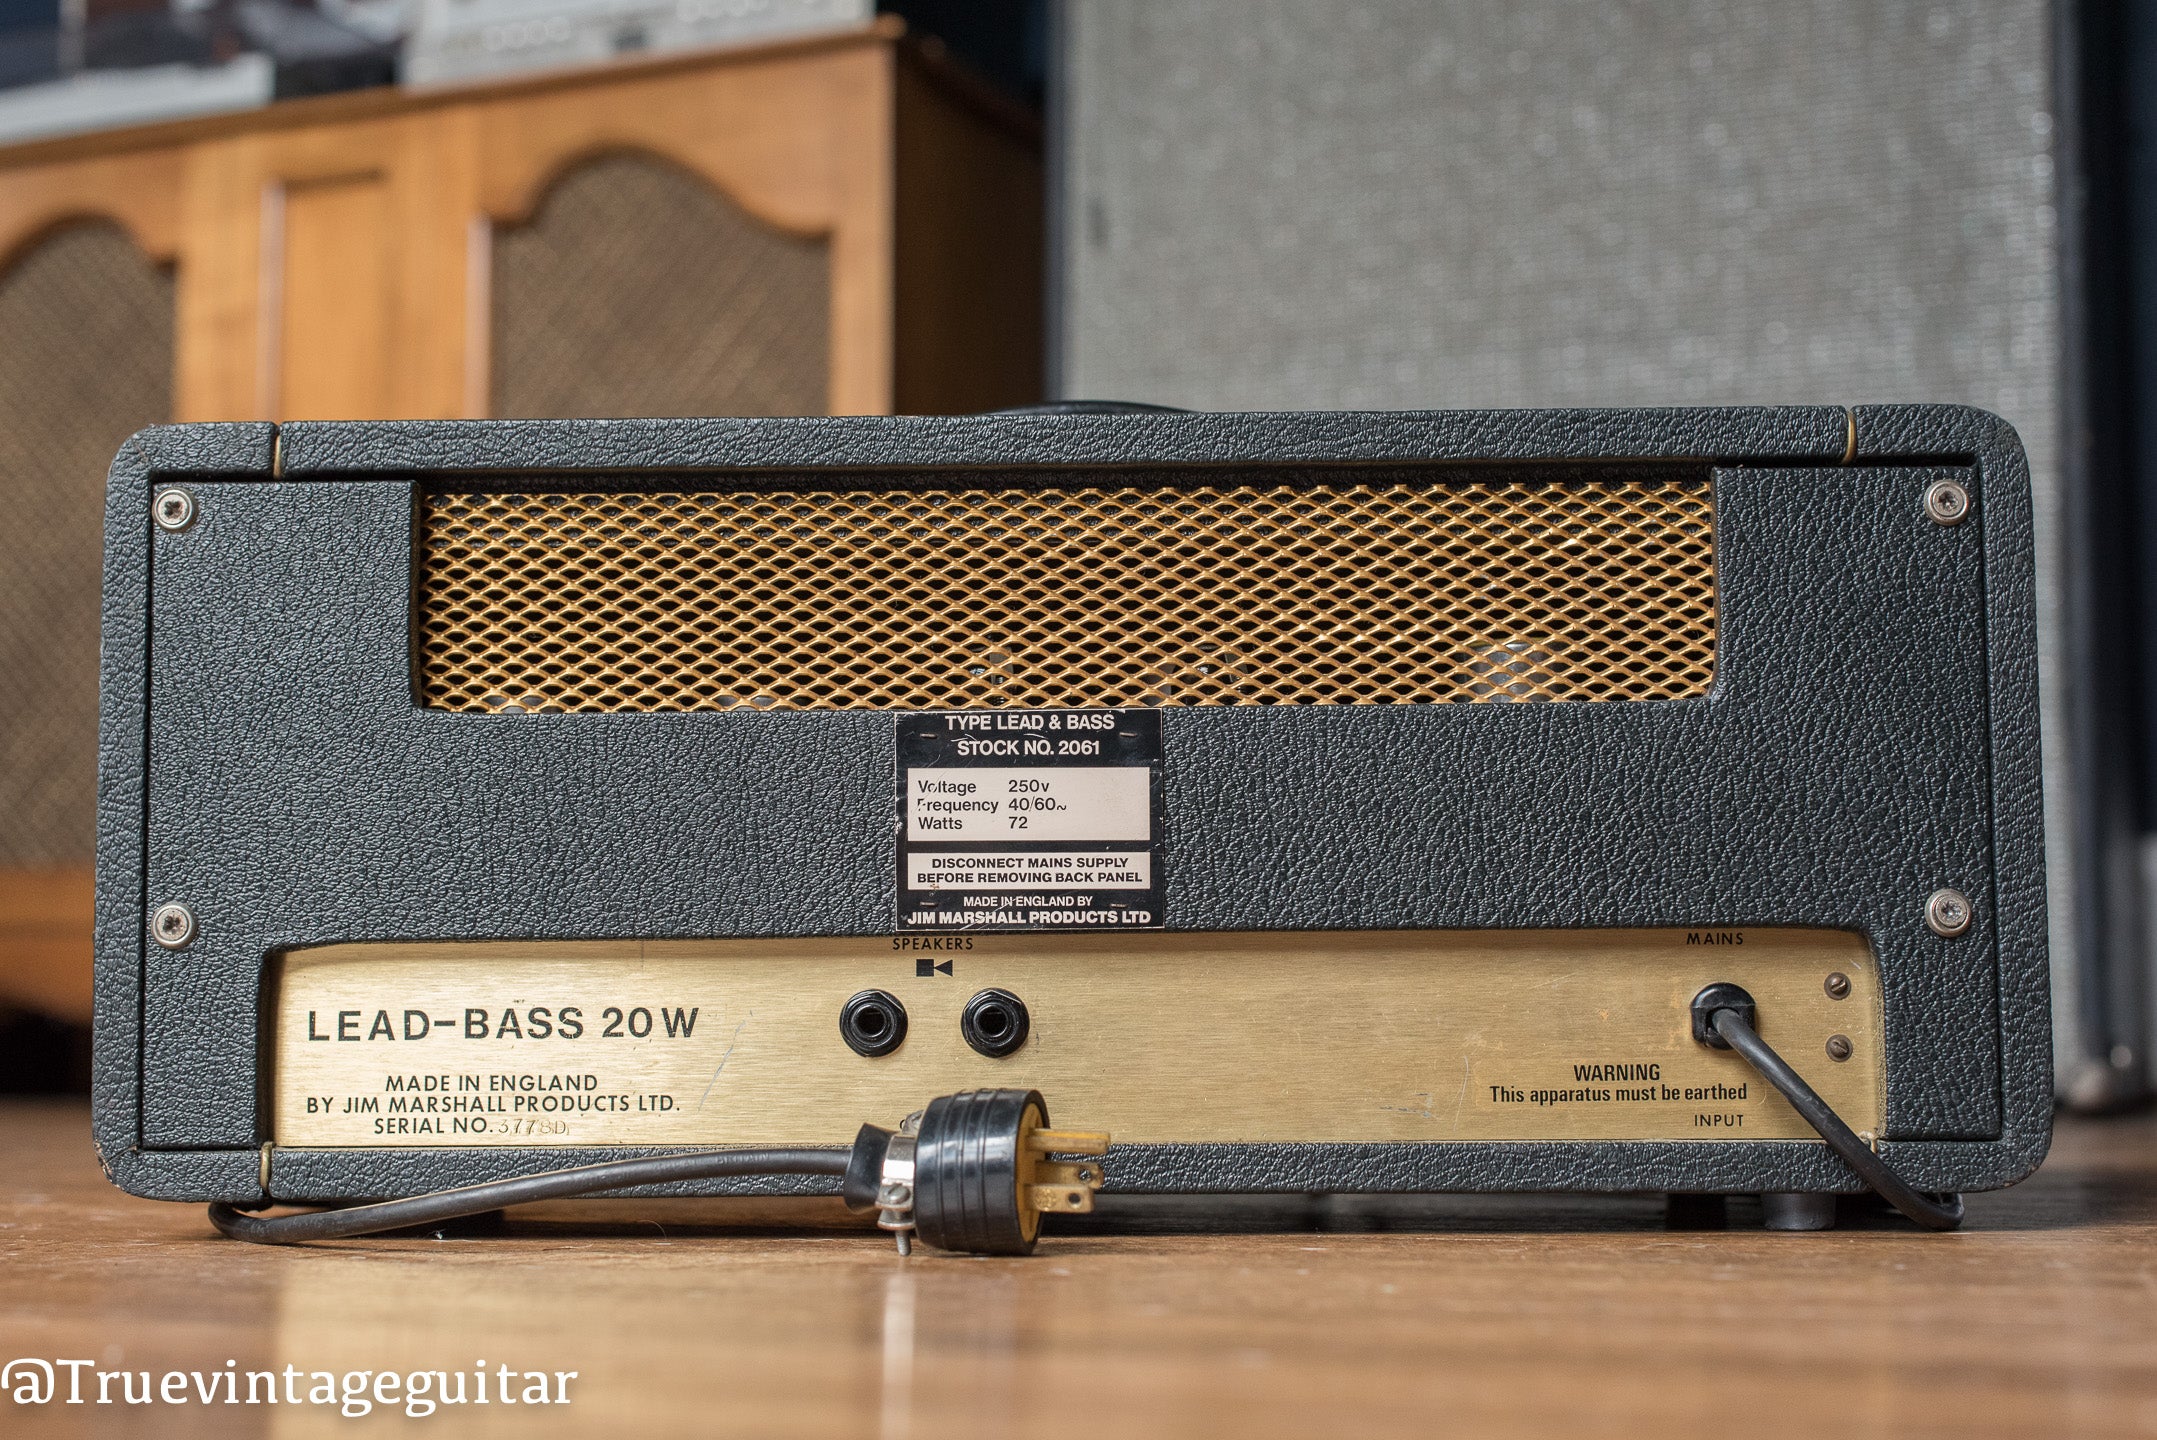  1972 Marshall Lead-Bass 20 watt guitar amplifier